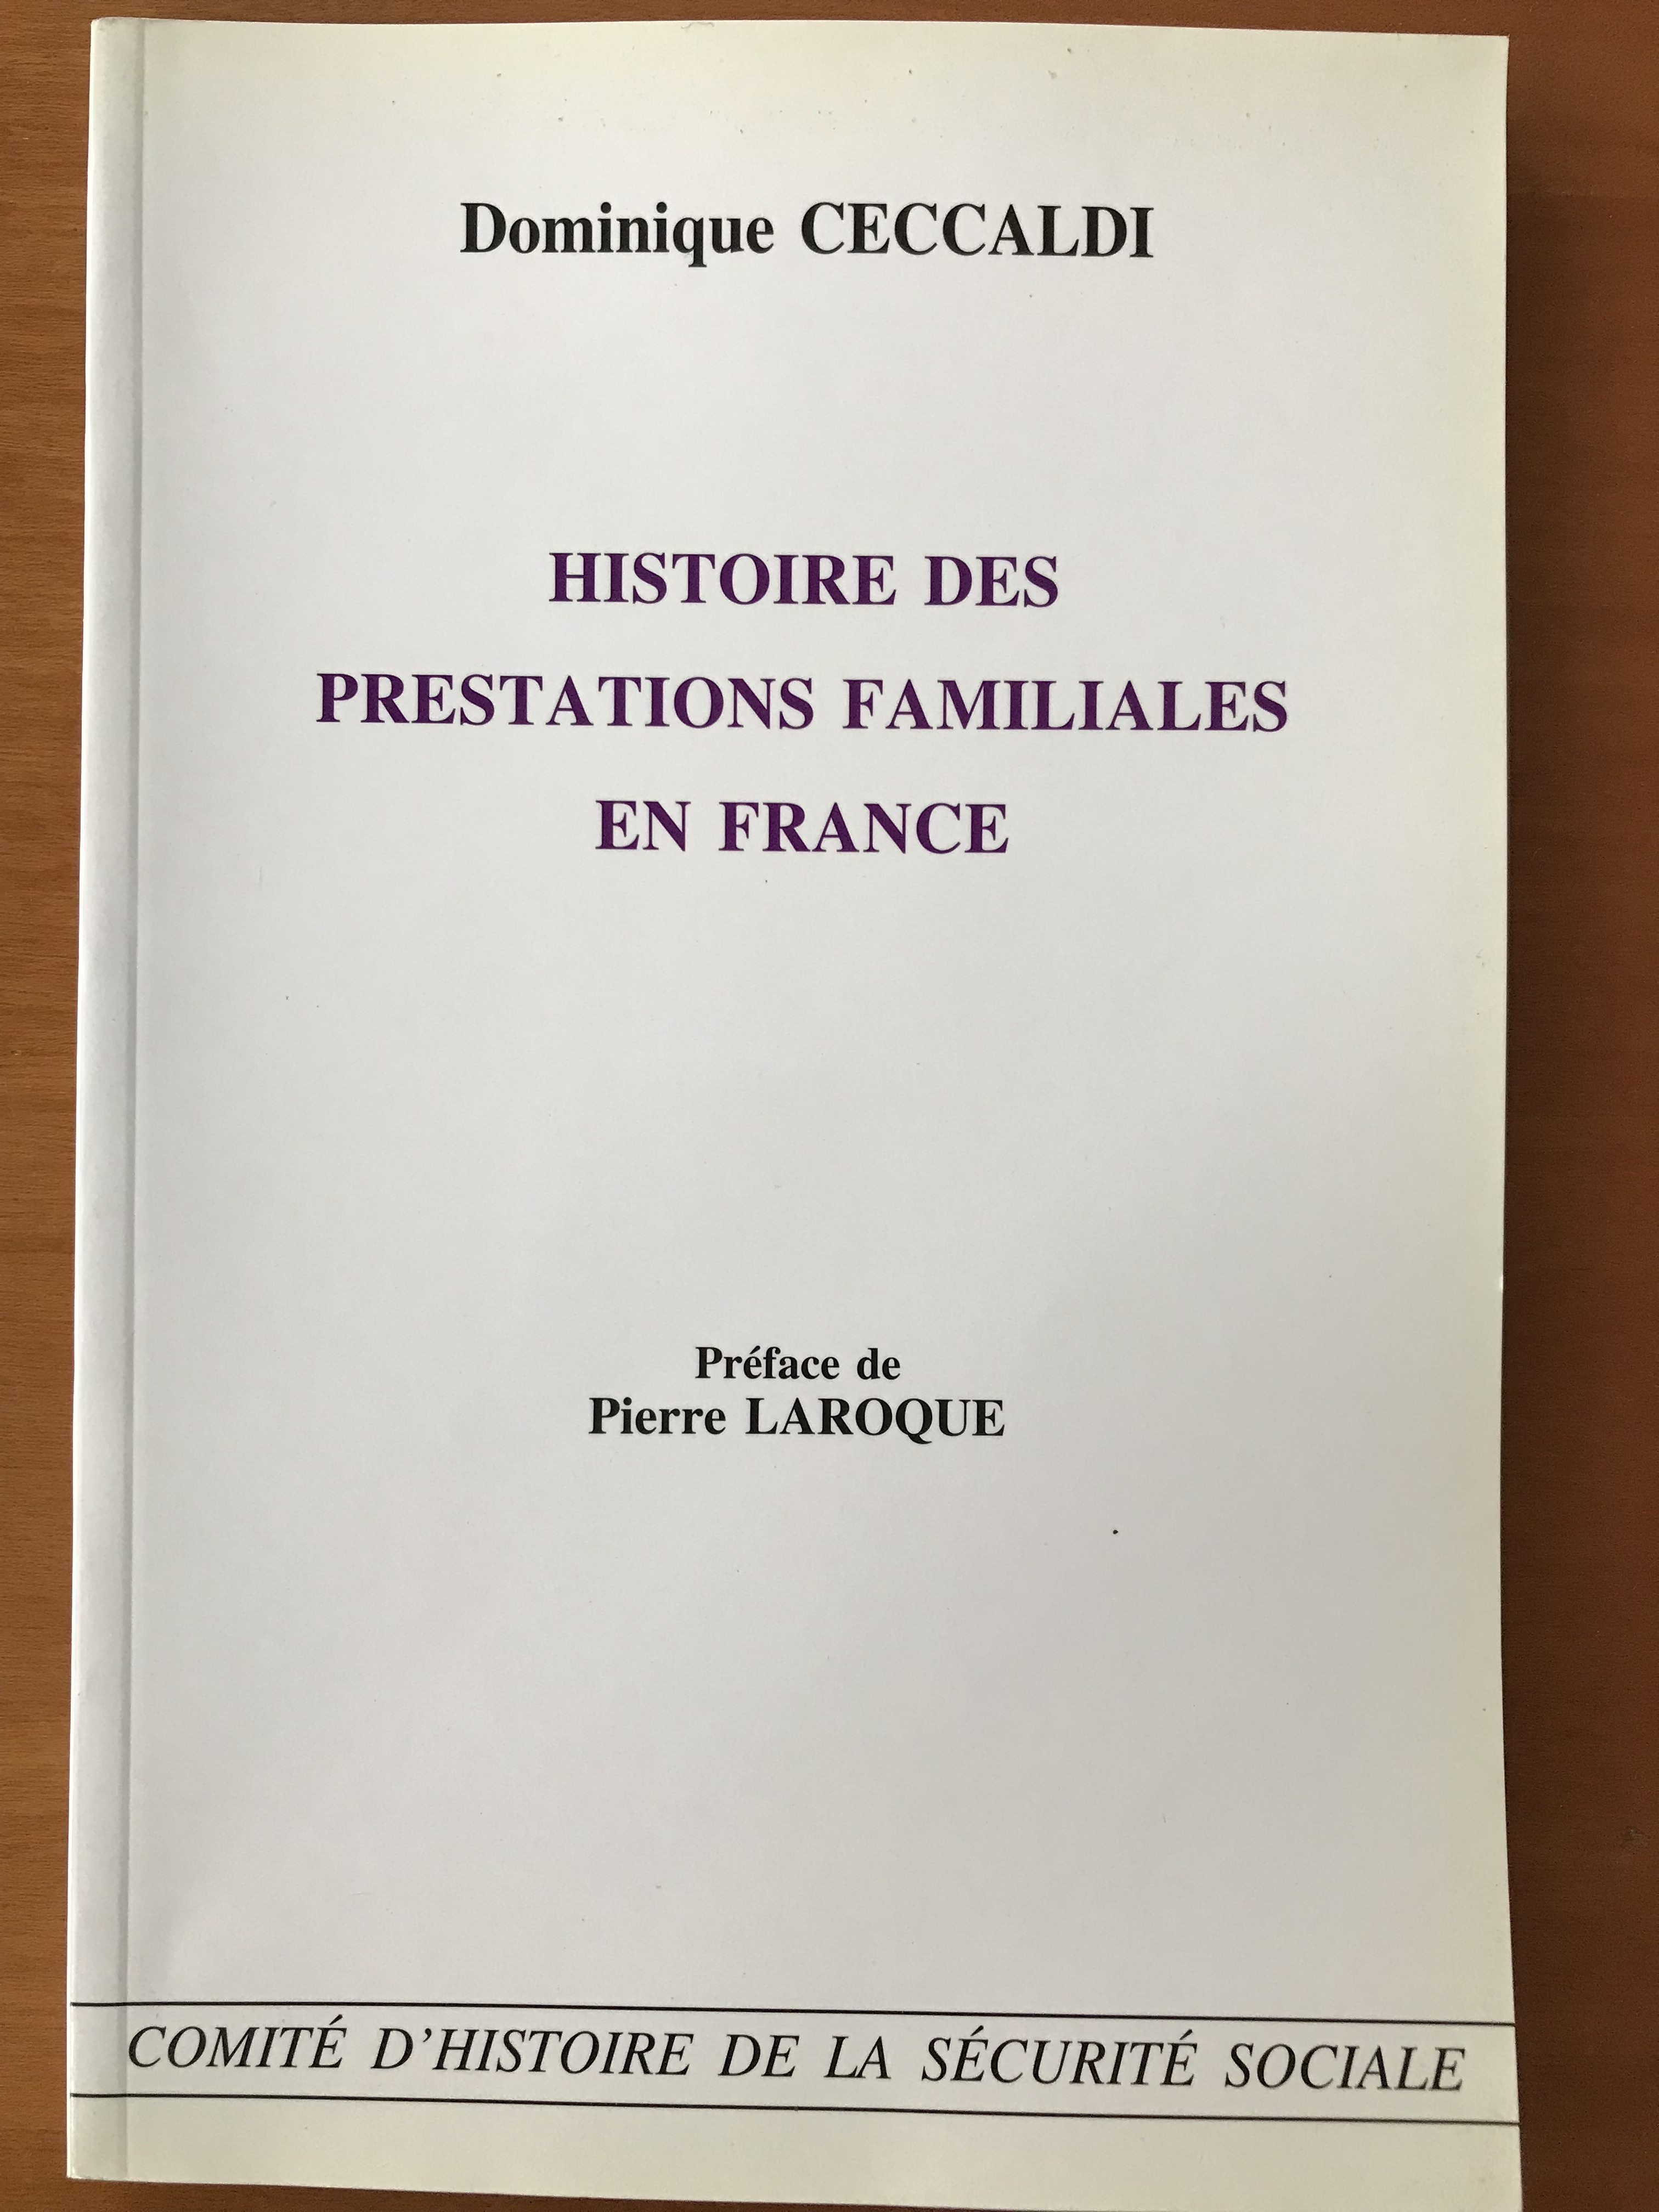 Histoire des prestations familiales en France